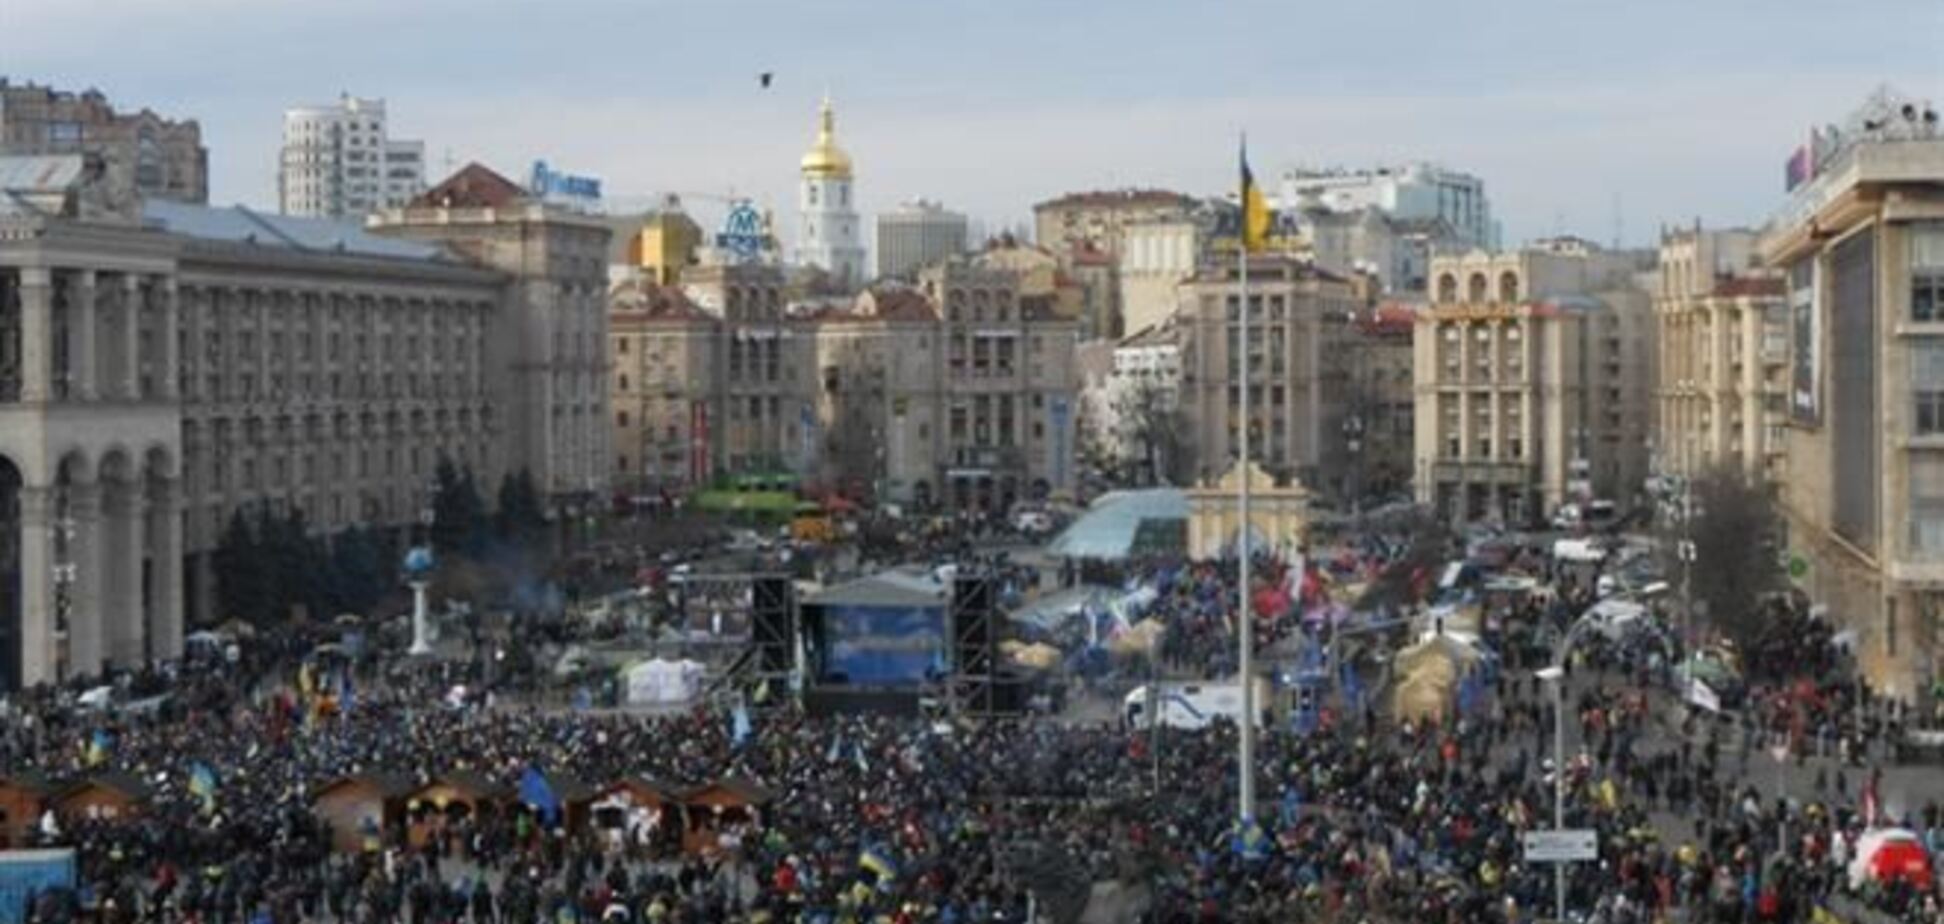 МВД: под Радой митингует 10 тыс. человек, на Майдане - втрое меньше 